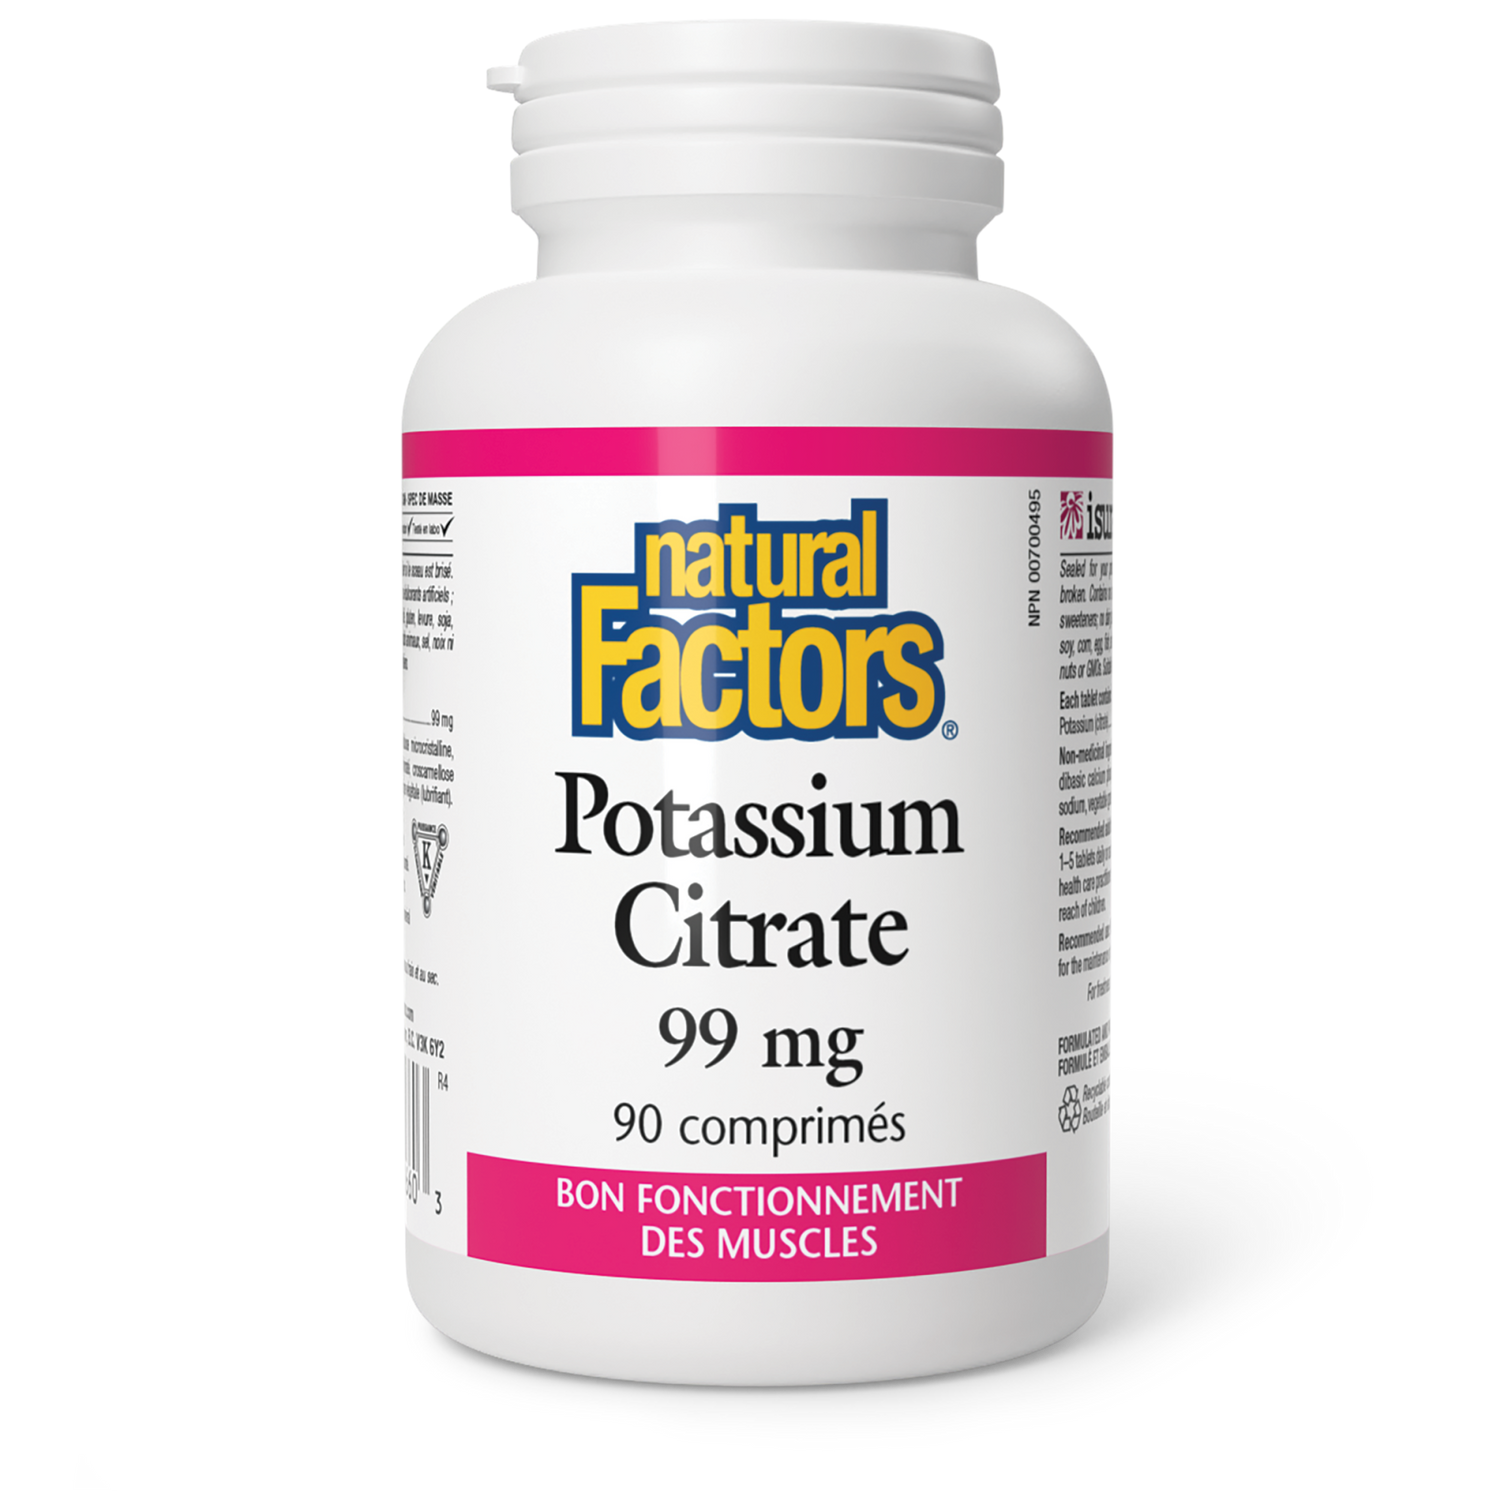 Potassium Citrate 99 mg, Natural Factors|v|image|1660